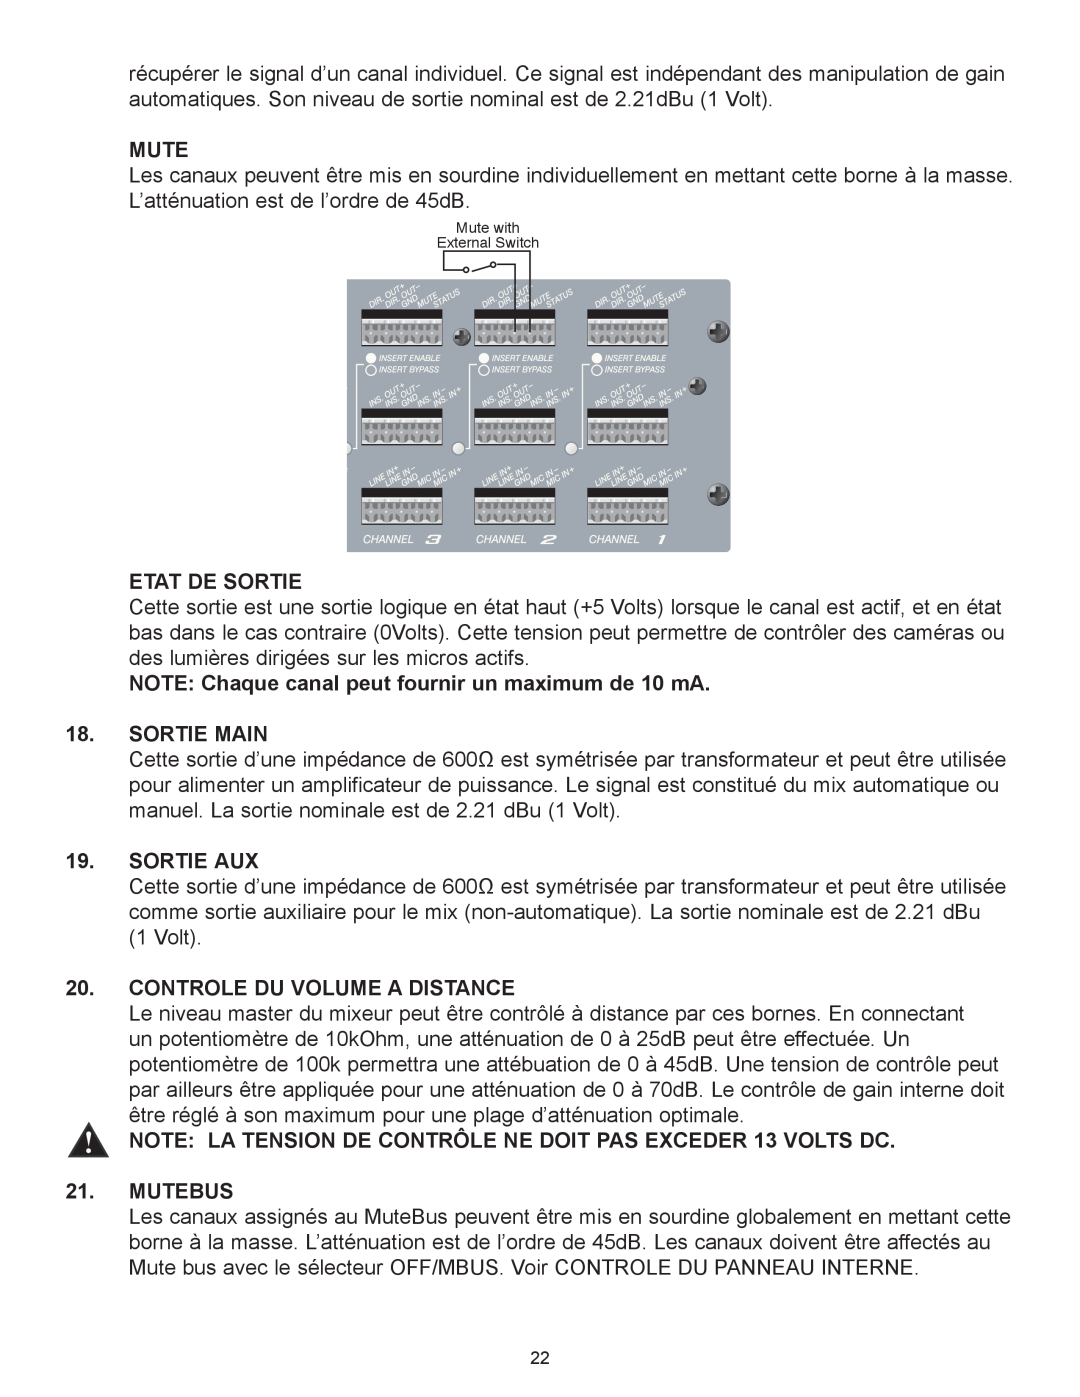 Peavey Automix2 manual Etat De Sortie, Sortie Main, Sortie Aux, Controle Du Volume A Distance, Mutebus 